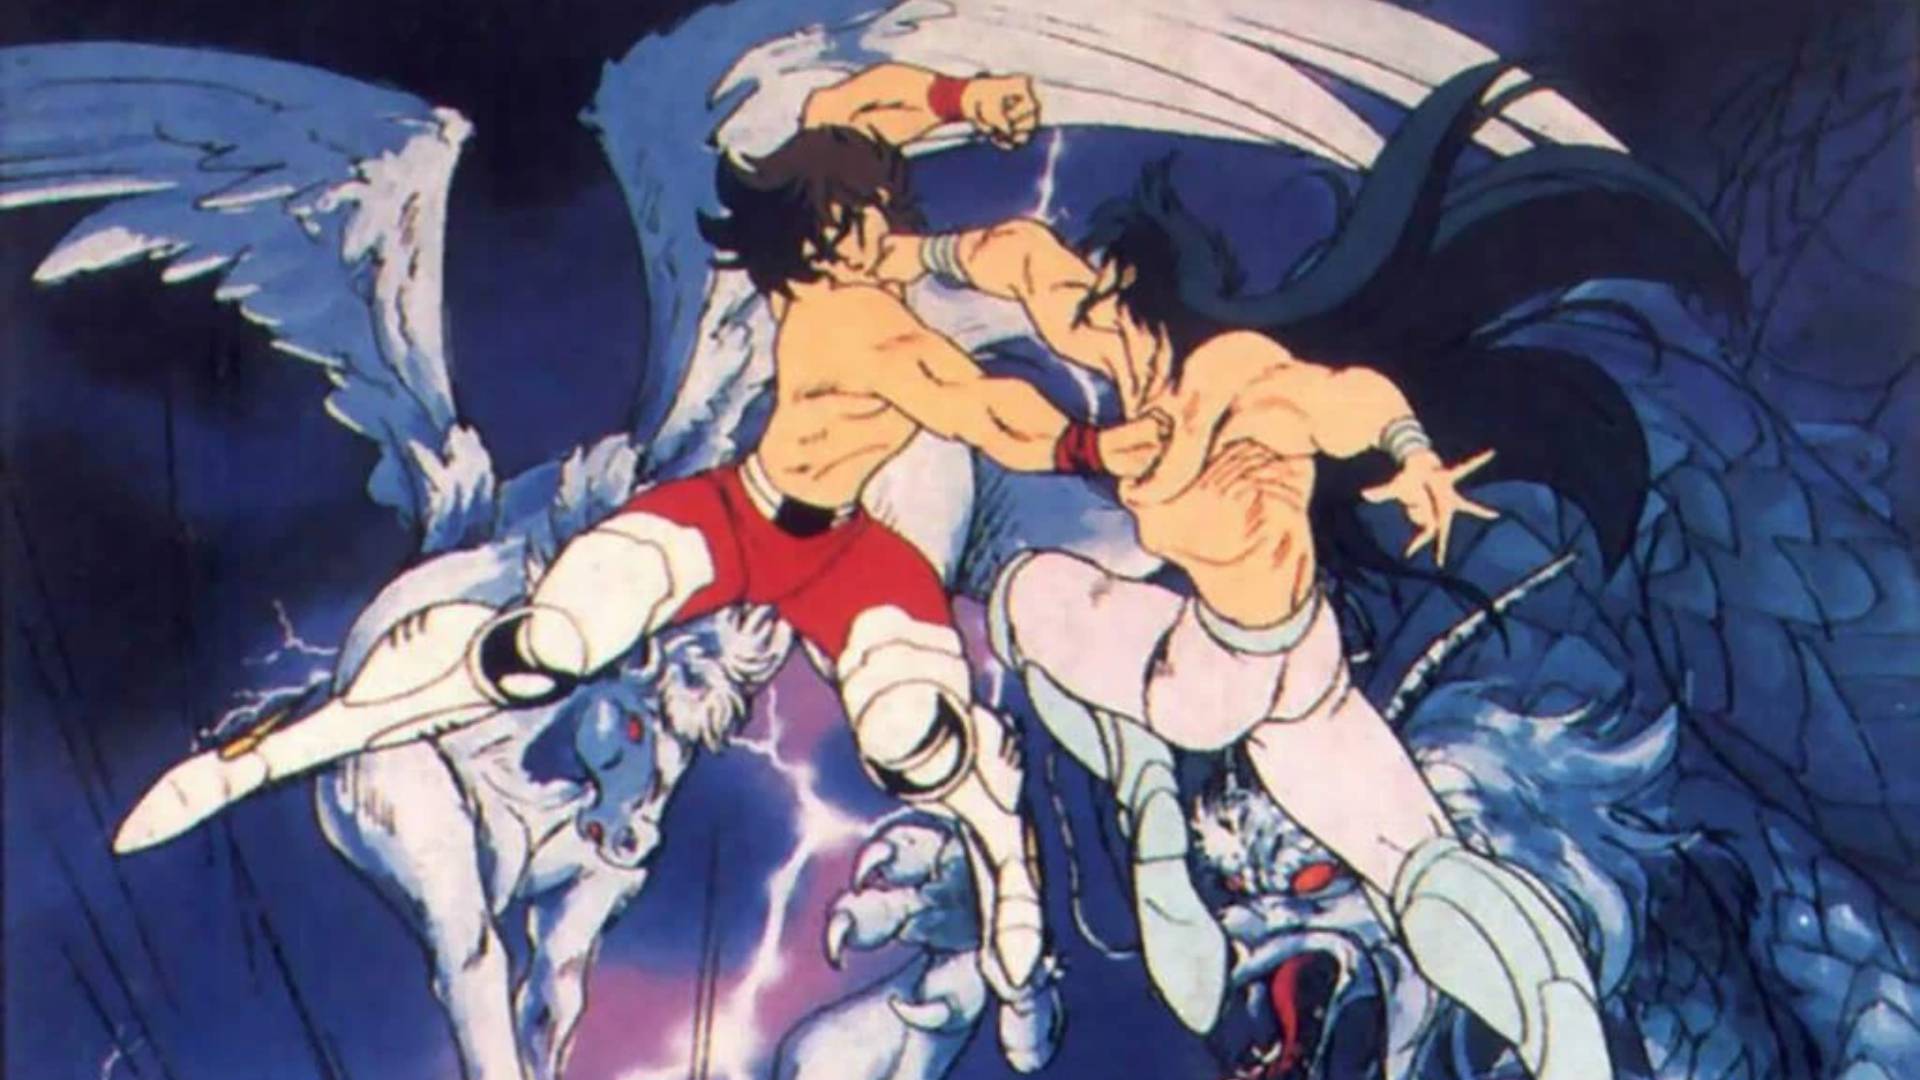 Seiya de Pegaso peleando contra Dragon Shiryu en el torneo galáctico de Los Caballeros del Zodiaco